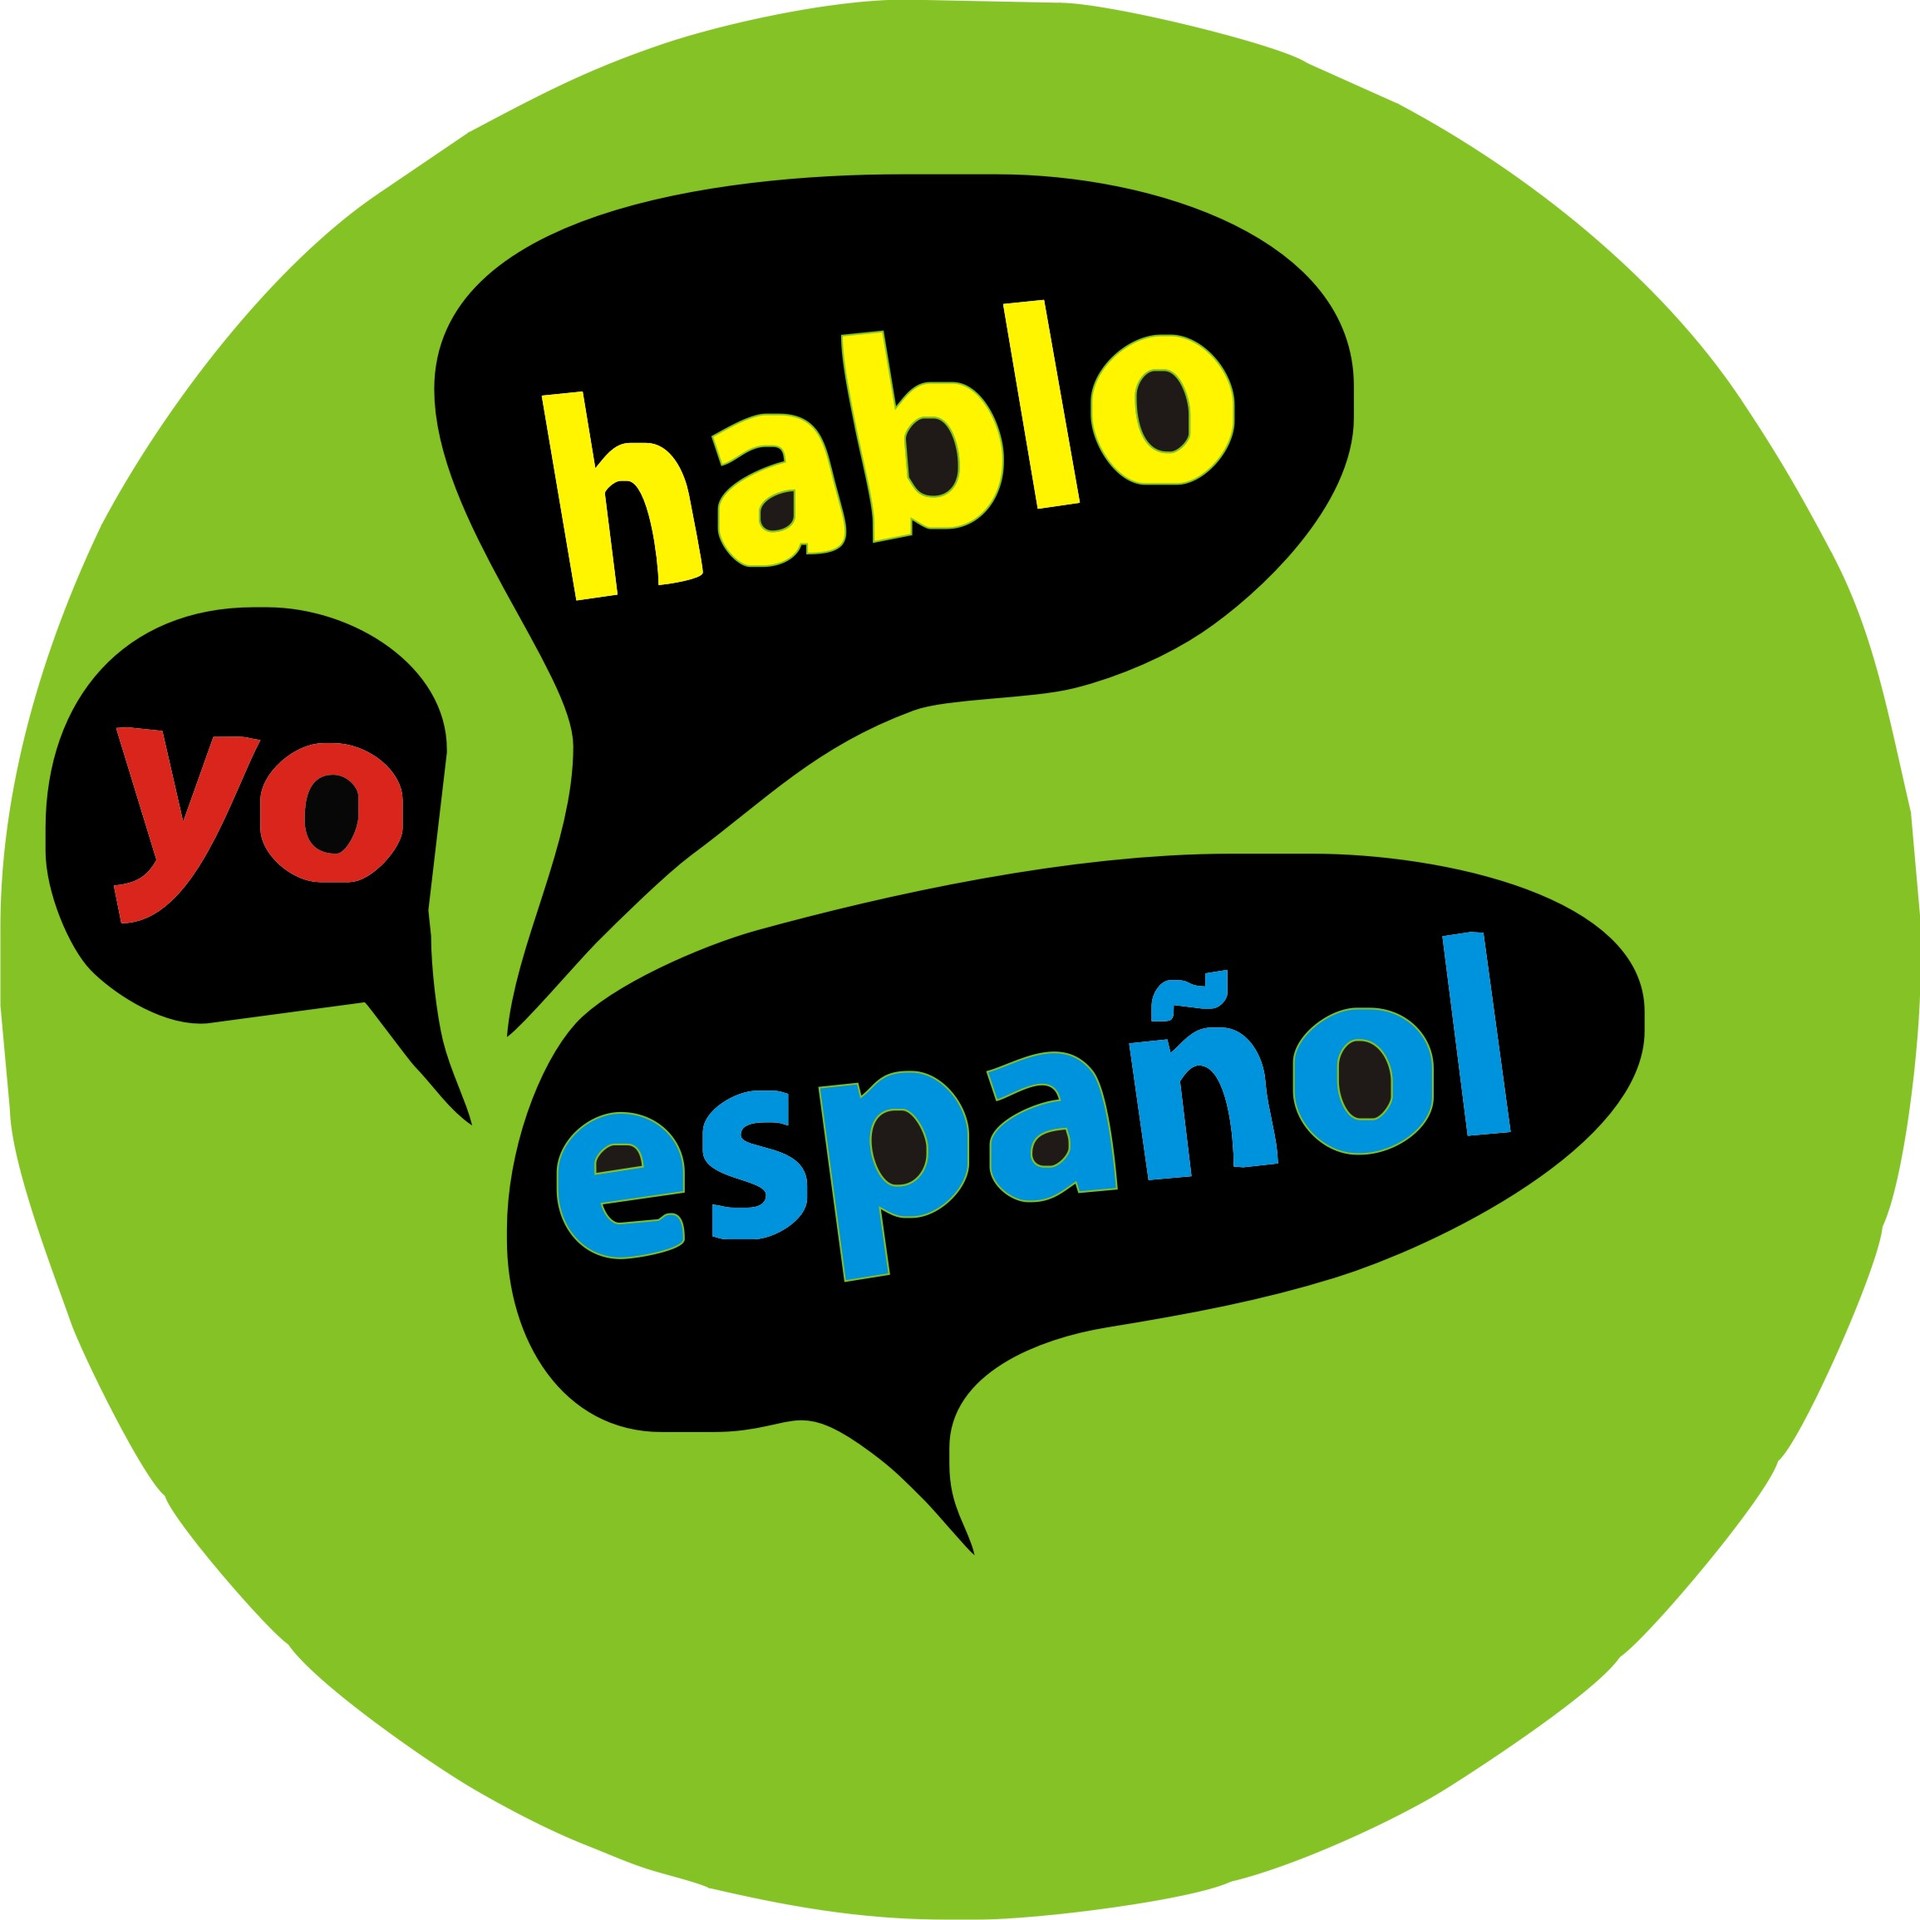 Esta es mi primera vez usando esta app. Espero que se me ayuda aprender más  español y dame claridad sobre el idioma. ¿En tu experiencia con esta app lo  encontraste ayuda bien